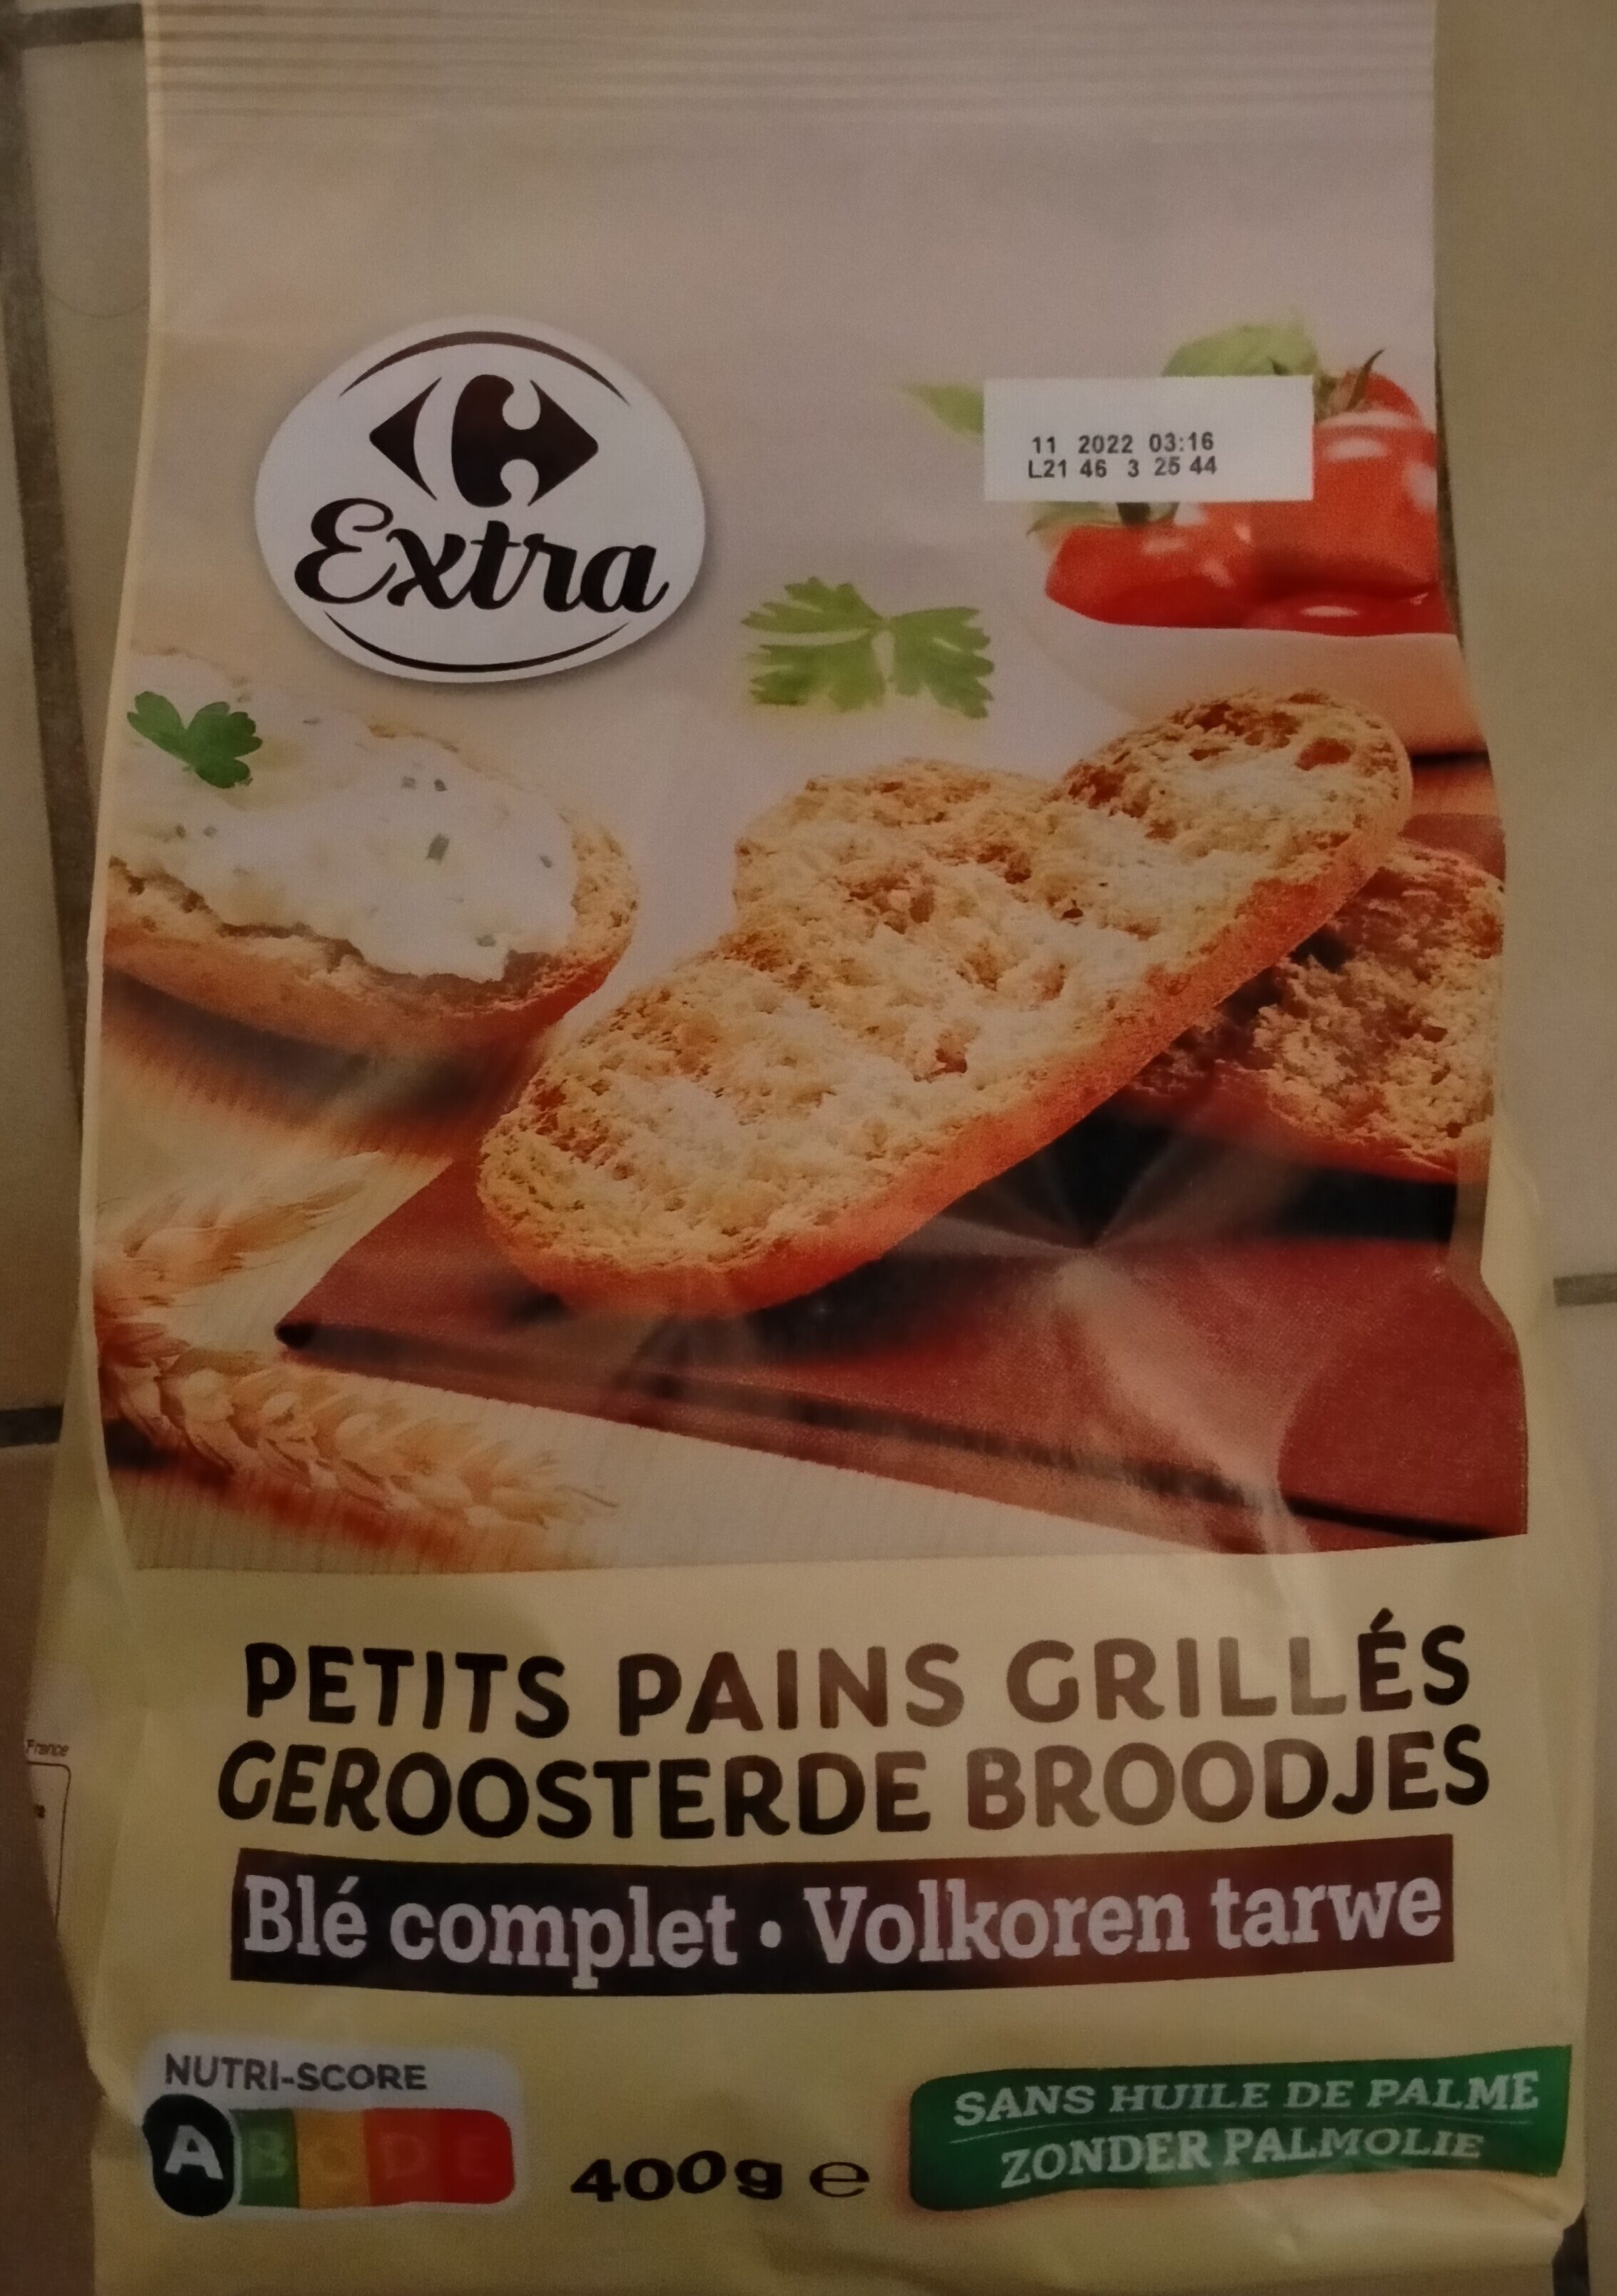 Petits pains grilles - Prodotto - fr